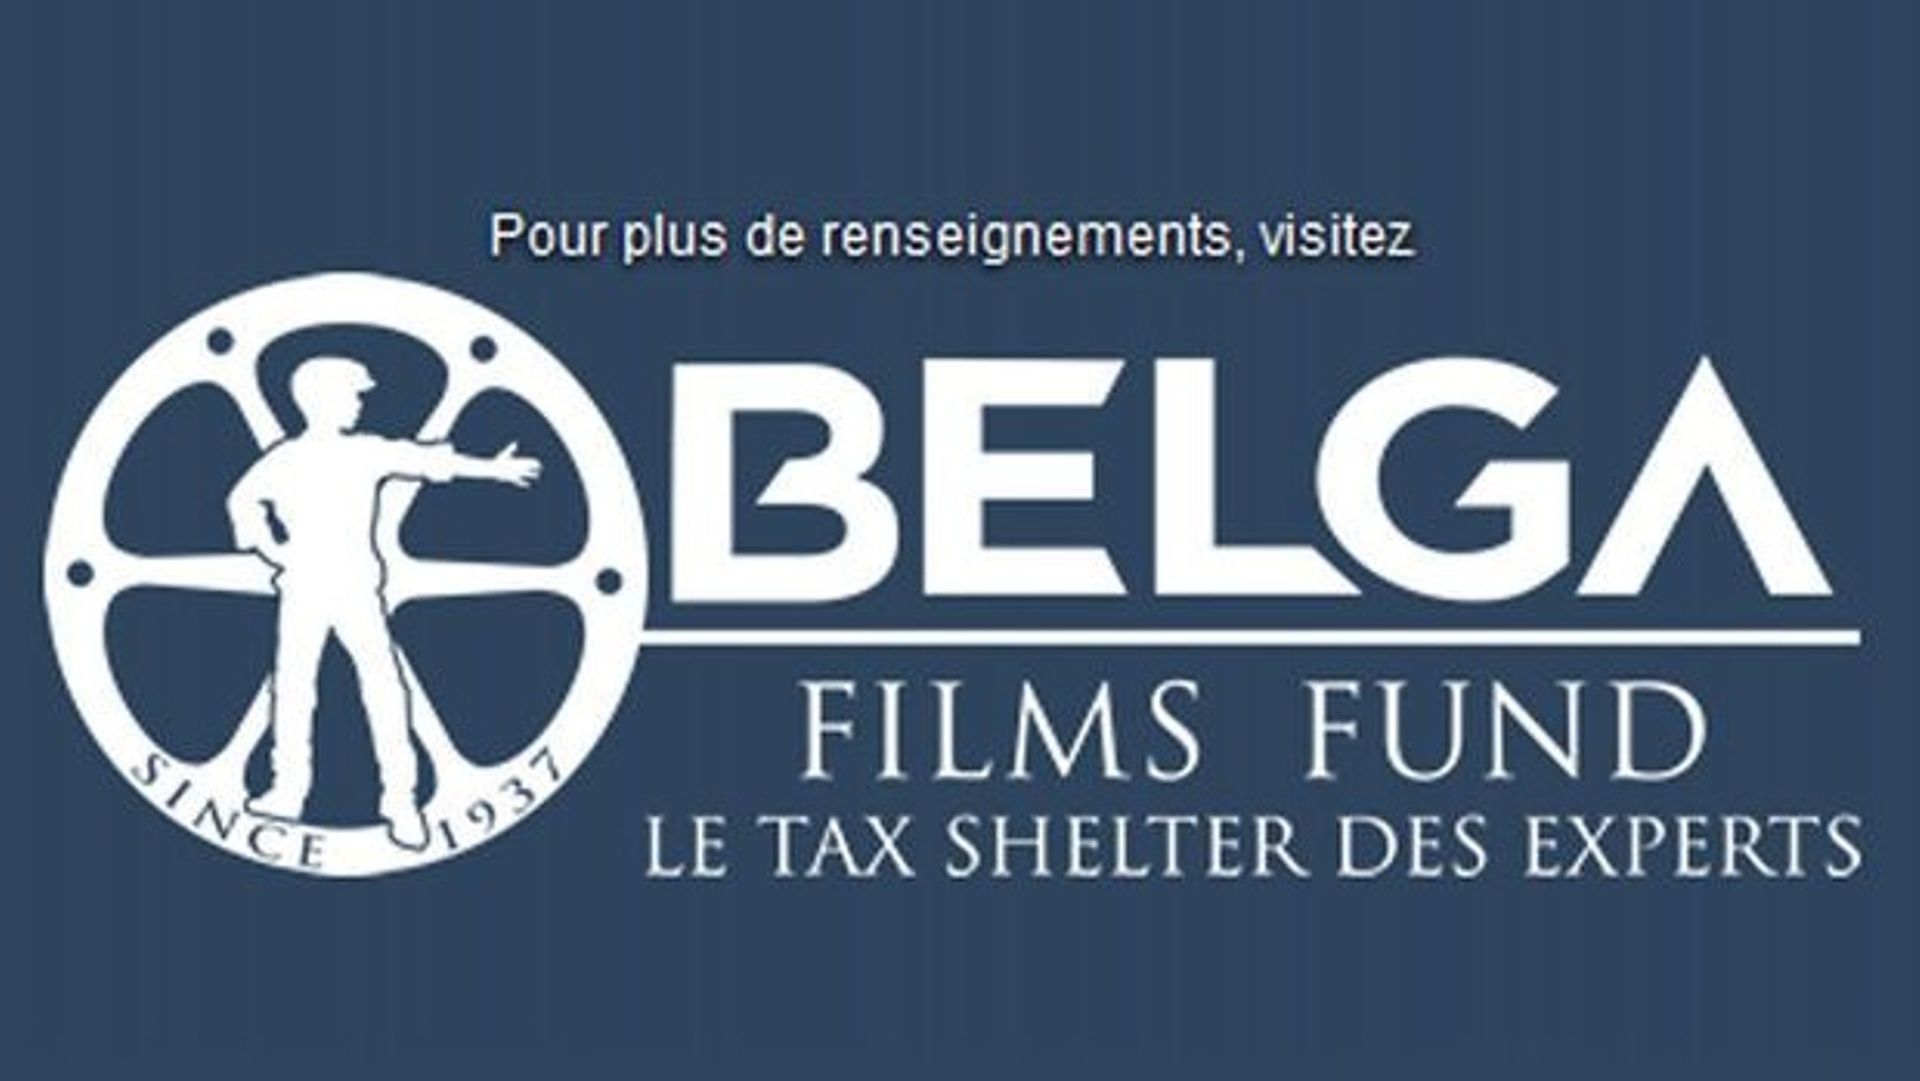 Belga Films Fund, nouvel opérateur Tax Shelter, complète l'offre de Belga Films